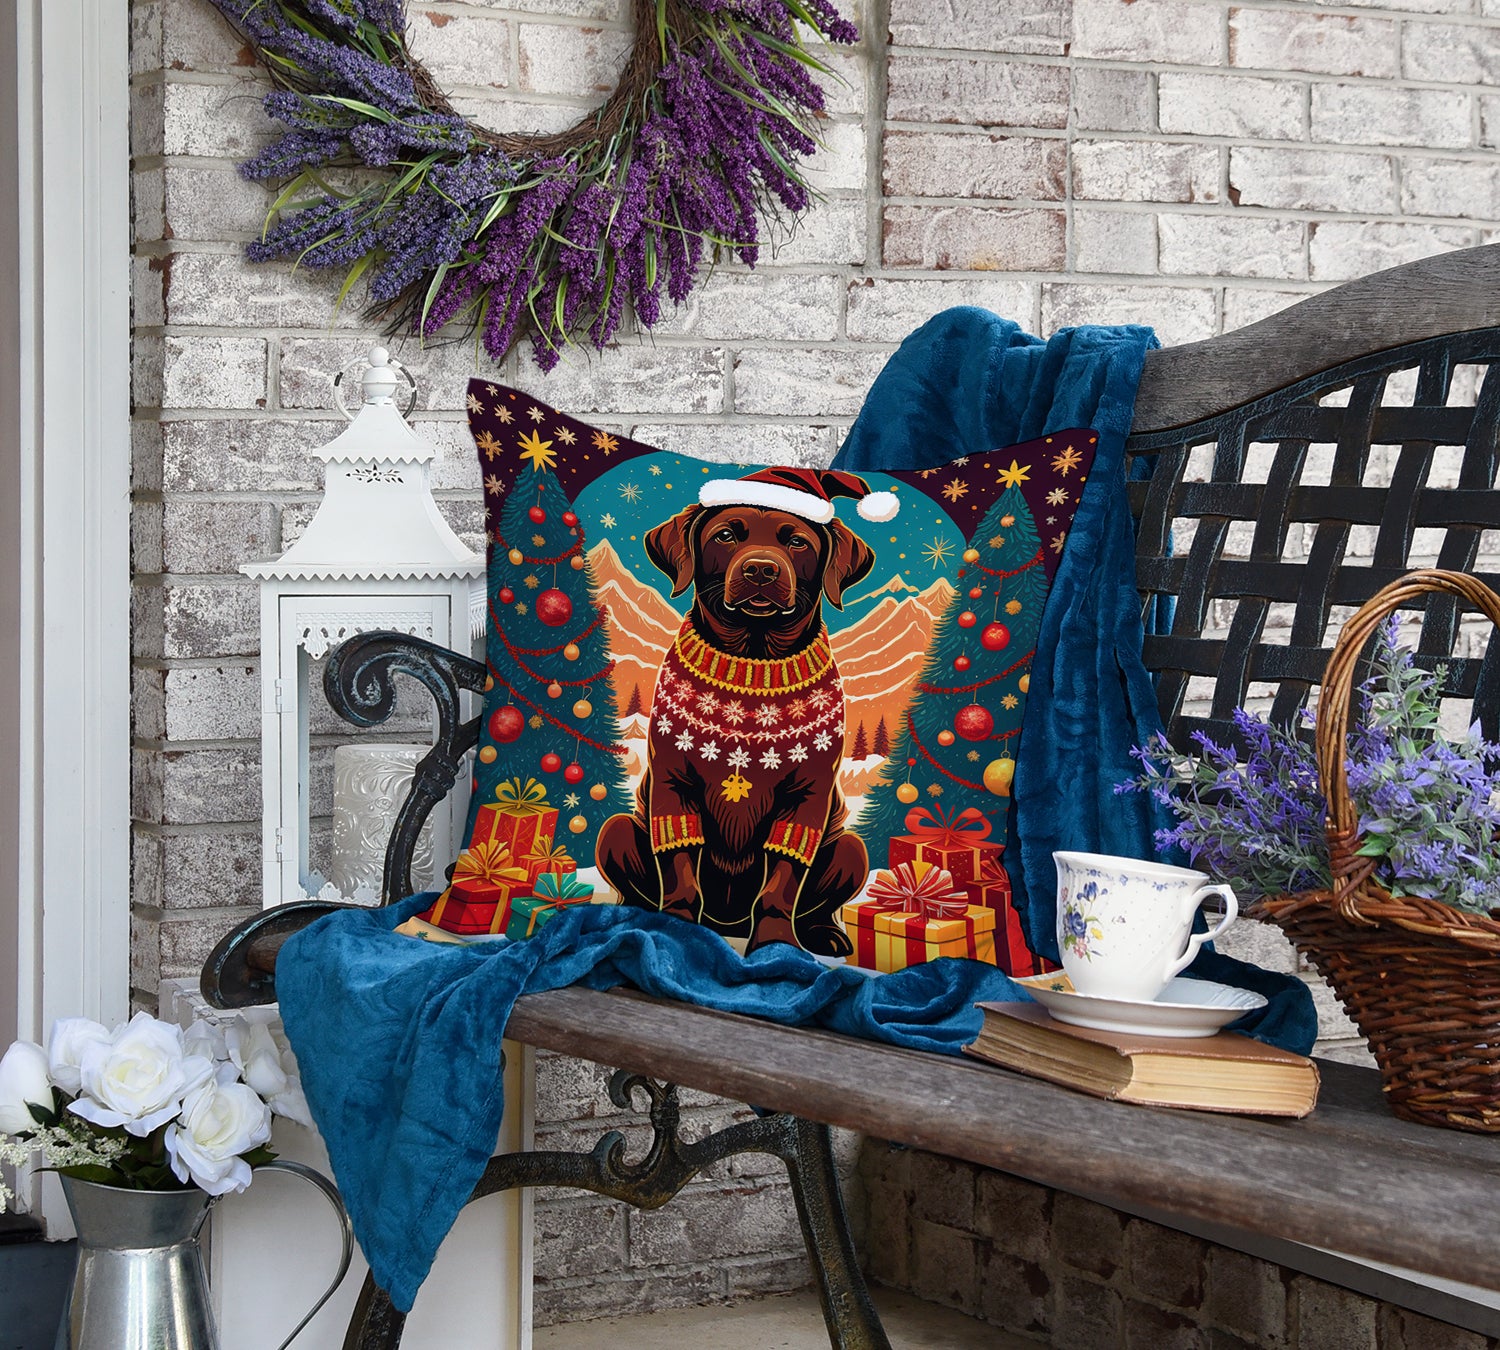 Chocolate Labrador Retriever Christmas Fabric Decorative Pillow